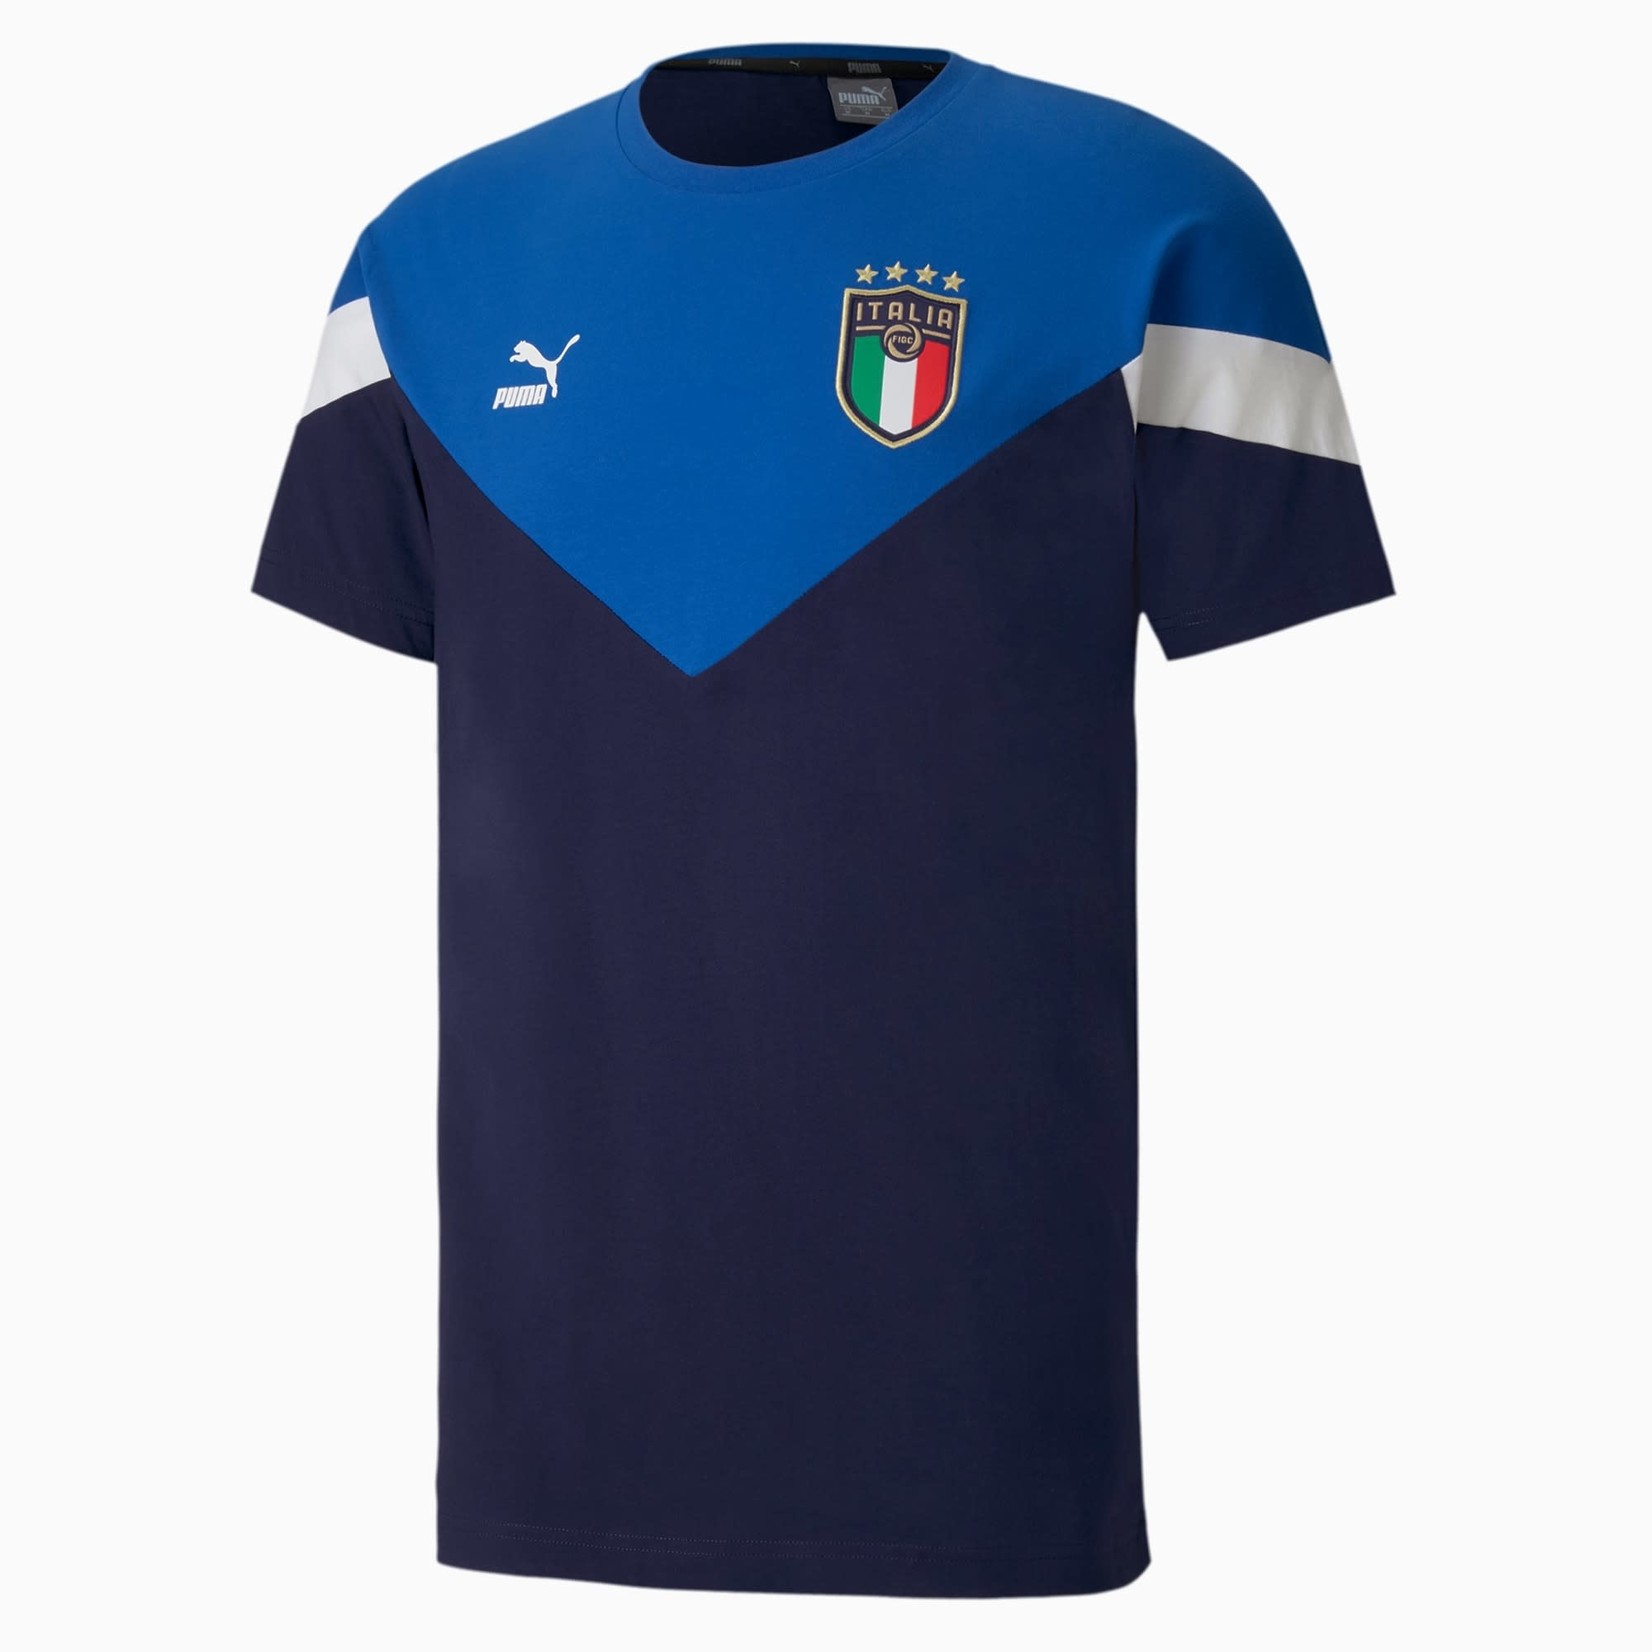 Puma Italy T-Shirt - 756660 01